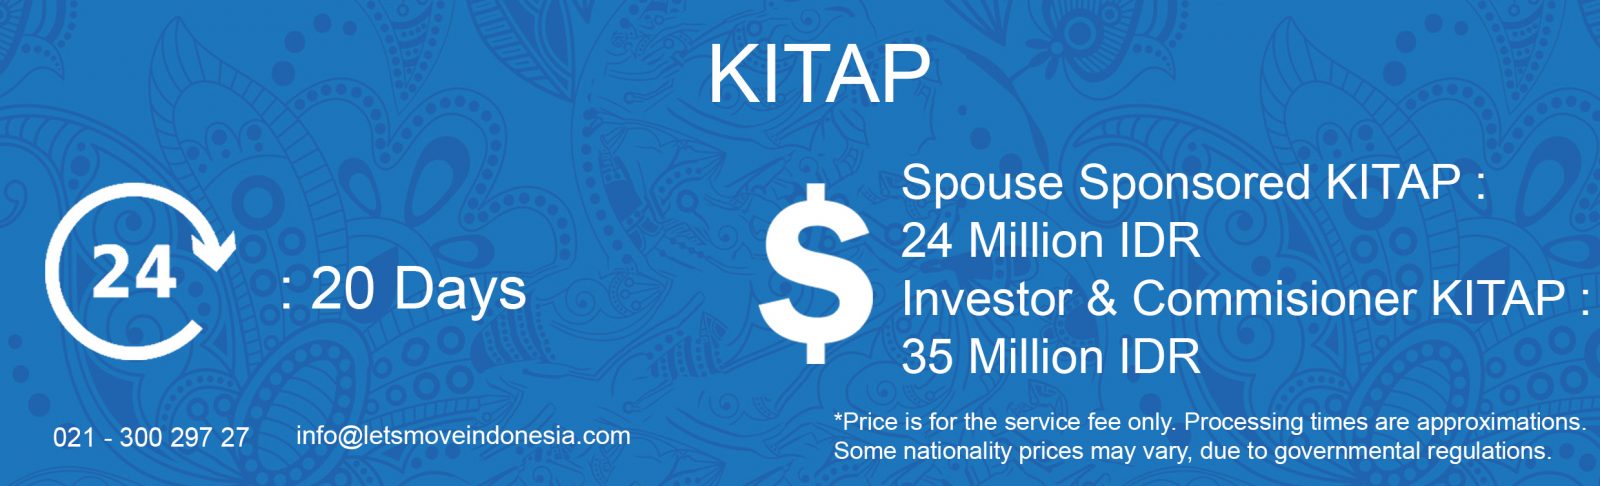 KITAP Prices | LetsMoveIndonesia